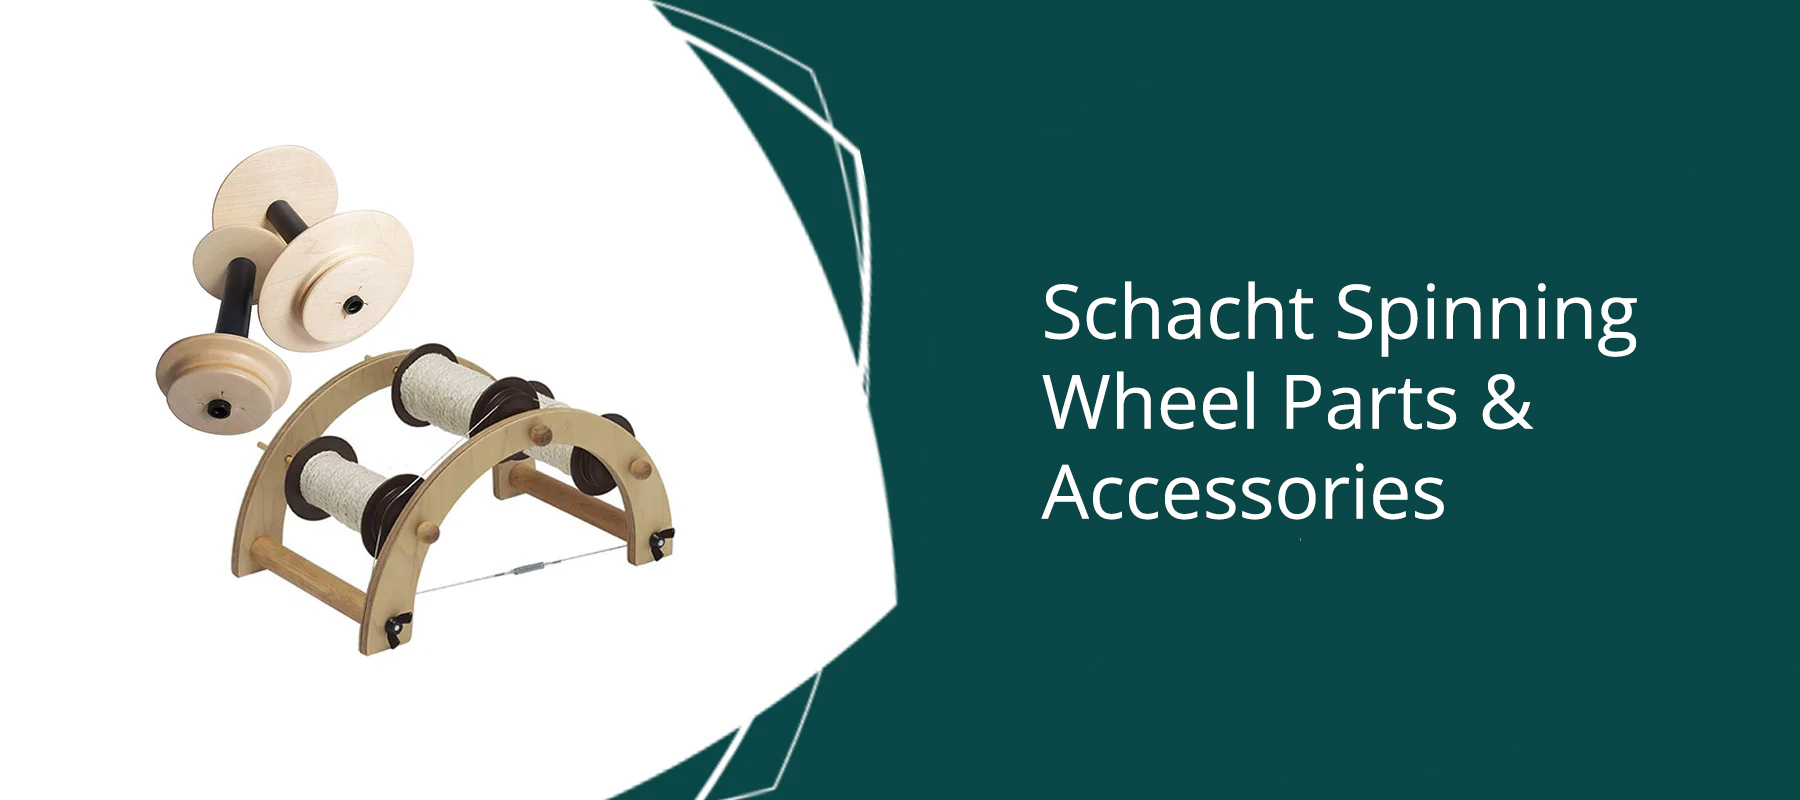 Schacht Spinning Wheel Parts & Accessories - Thread Collective Australia 